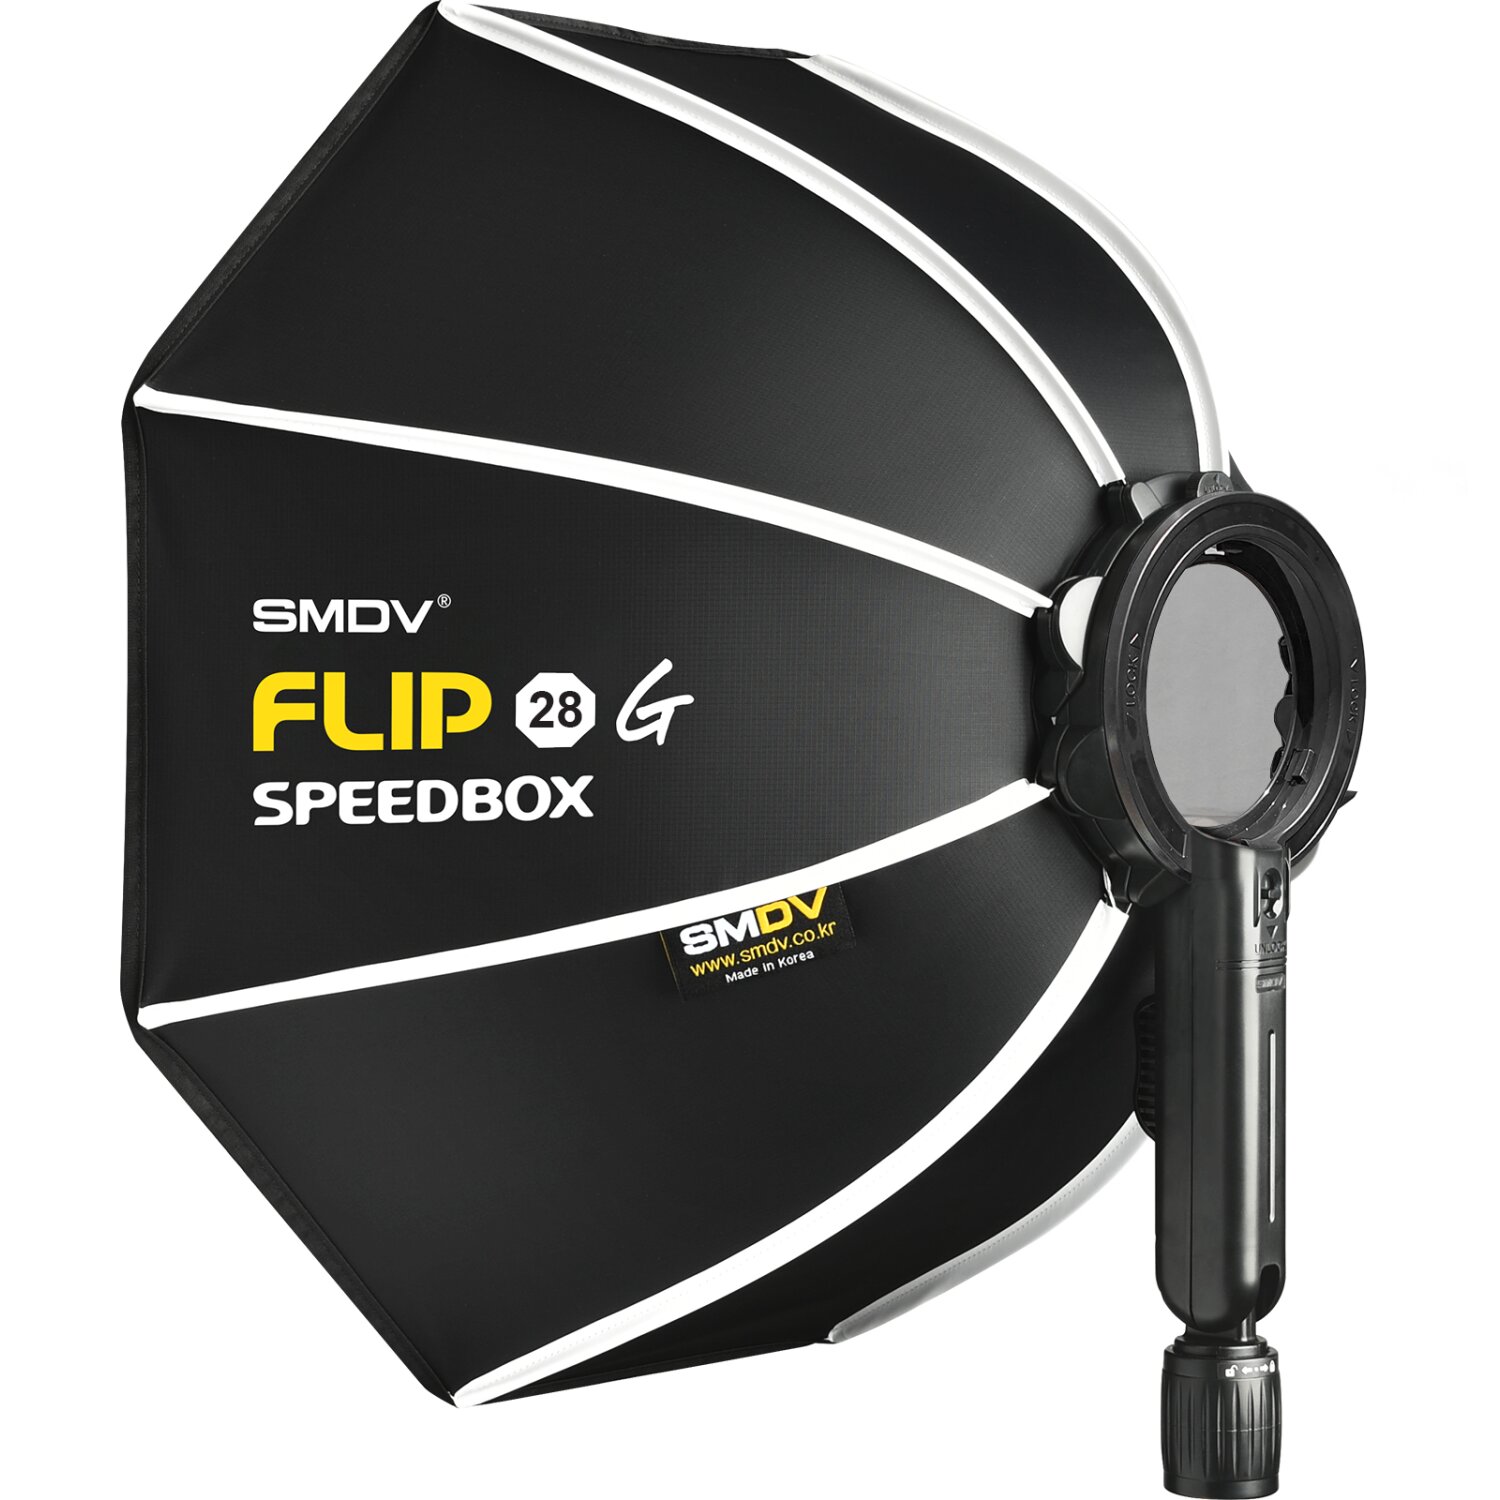 Impulsfoto SMDV Softbox Speedbox-Flip G 28 | 70cm Ø | Einsatzbereit in 1 Sekunde